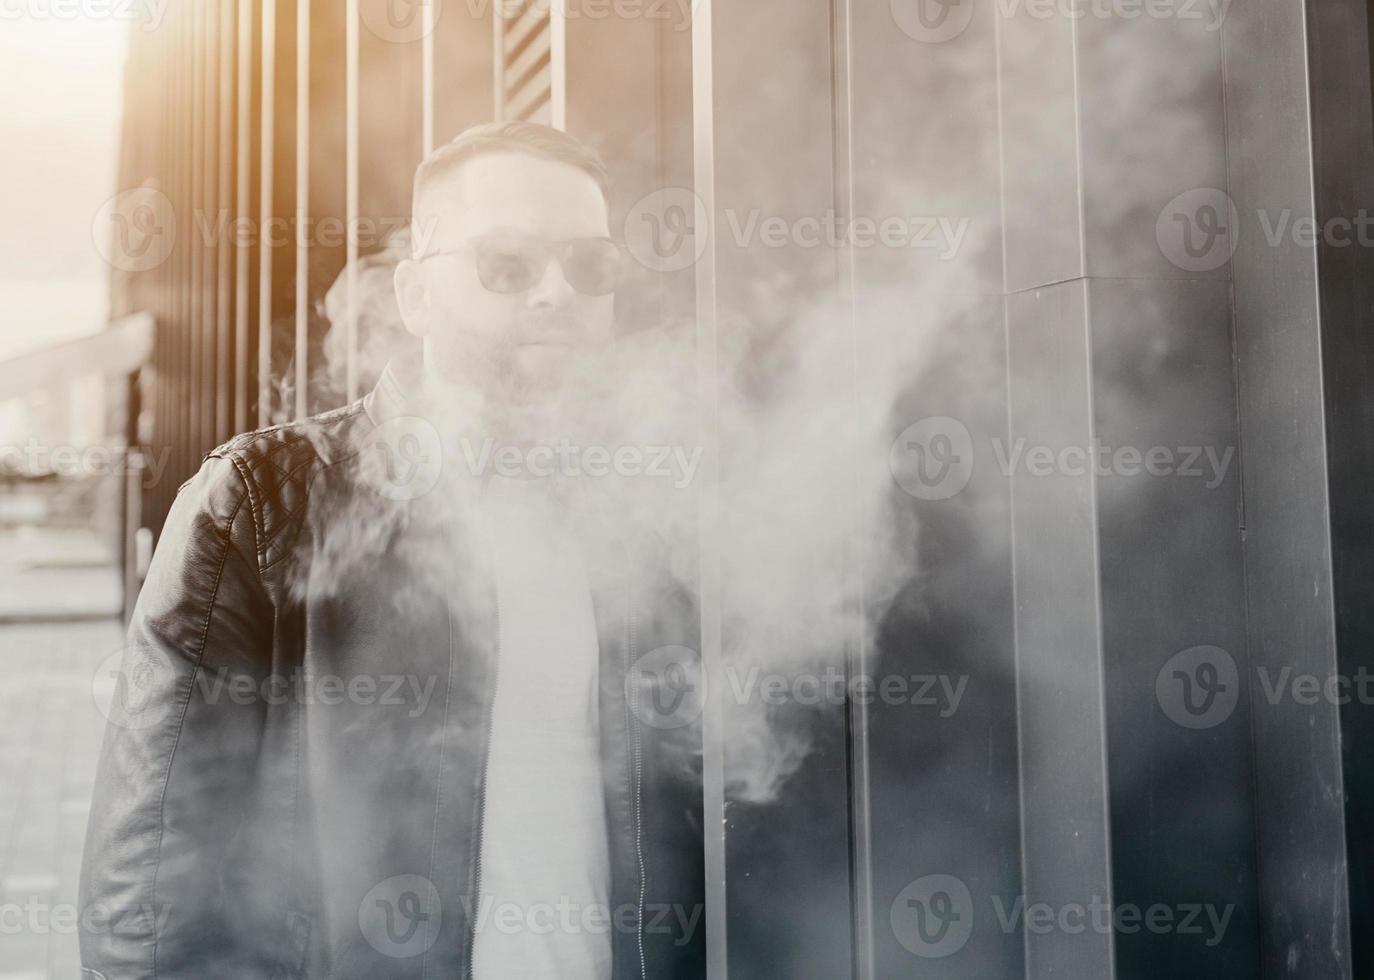 cara bonito fumando um cigarro eletrônico foto